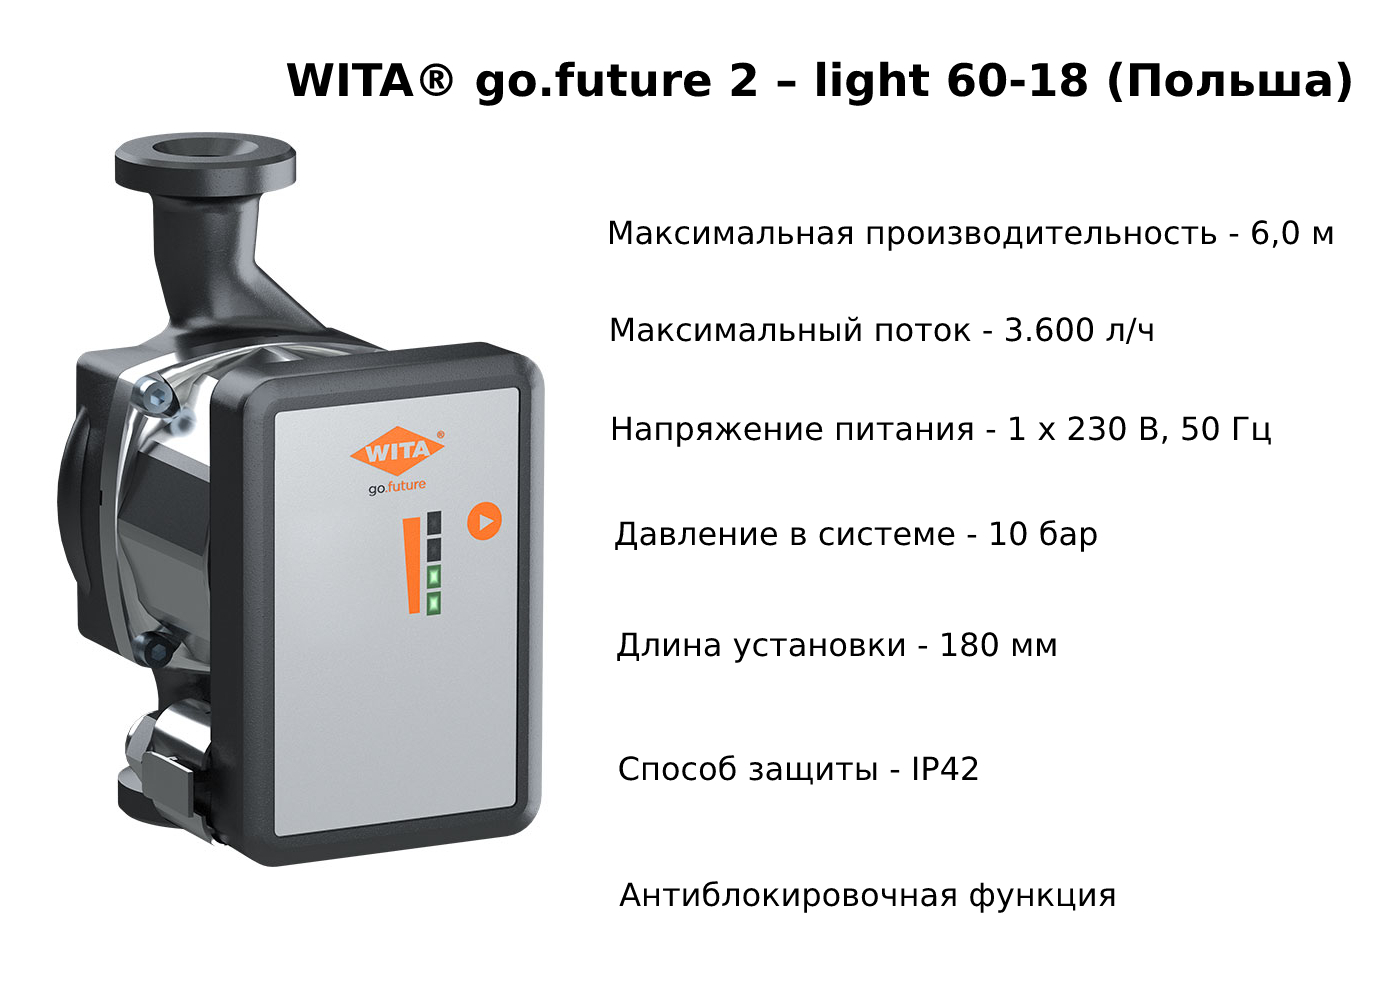 Циркуляционный насос WITA go.future 2 light 60-18 (Польша)